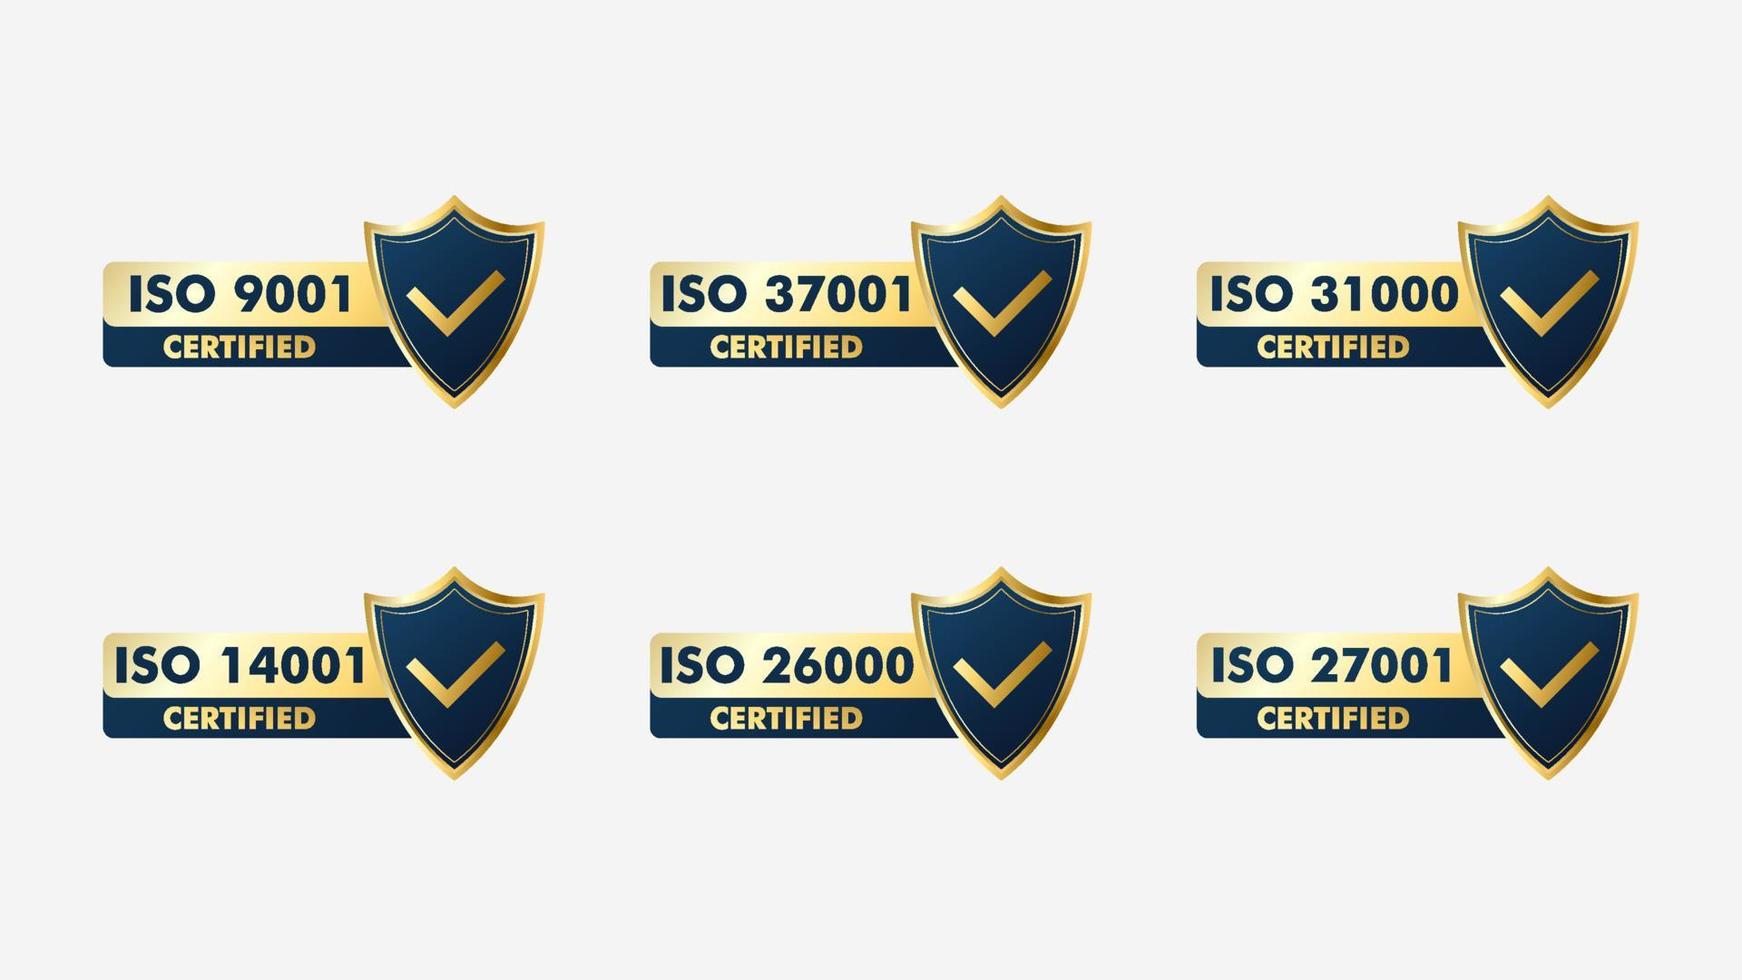 conjunto de Yo asi Certificación sello y etiquetas calidad administración sistema, Yo asi 9001, Yo asi 22000, Yo asi 14001 vector